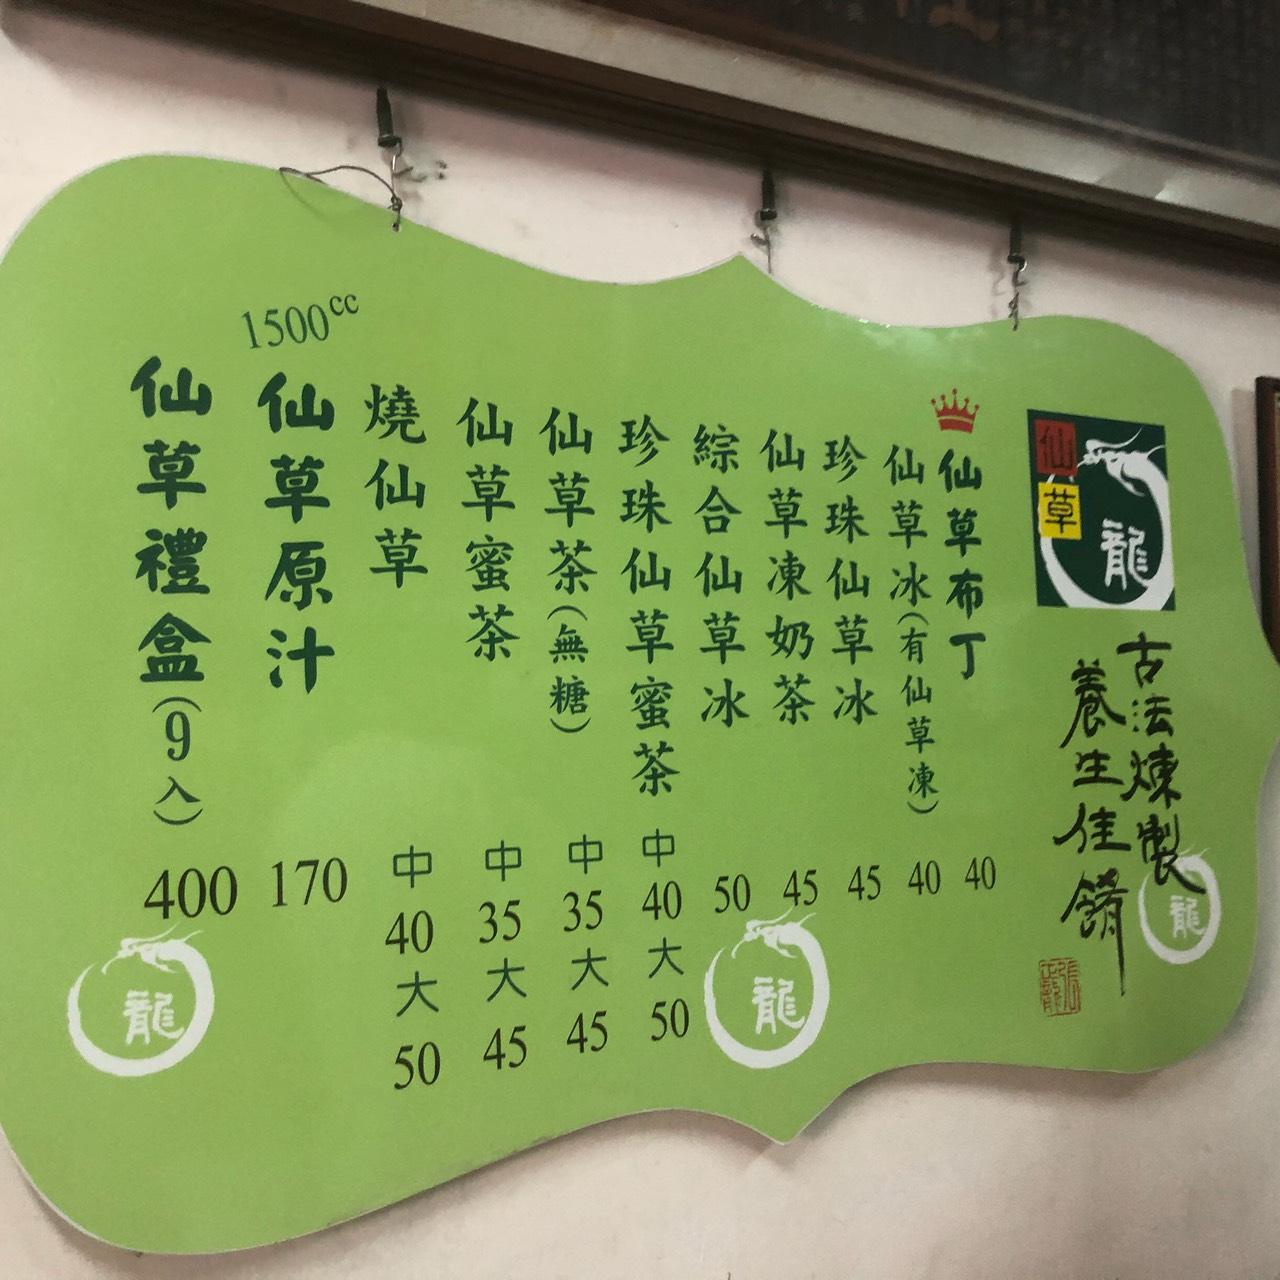 仙草龍 menu